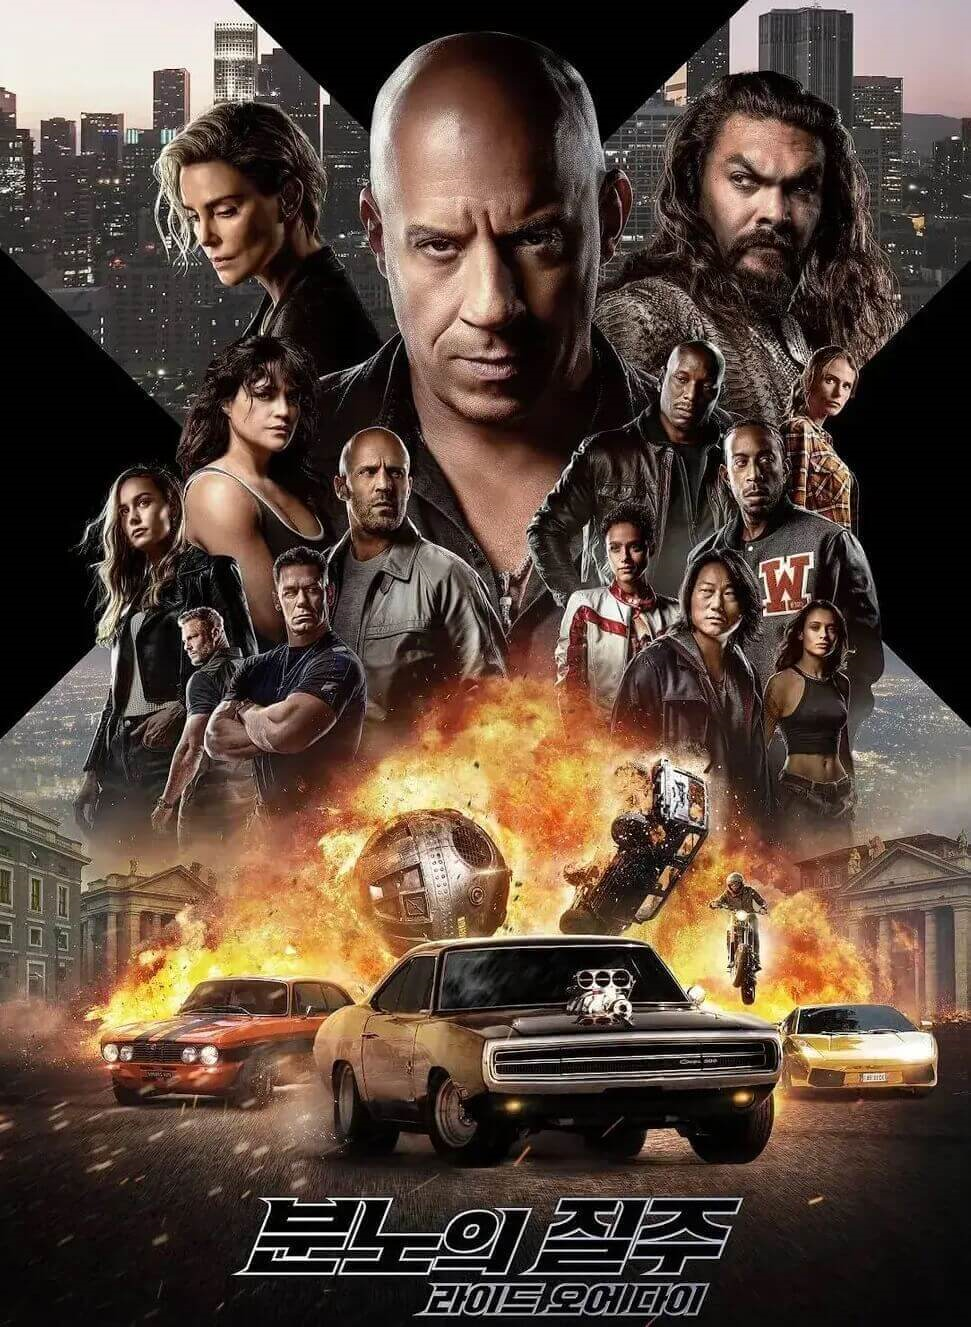 영화 포스터의 일부로 하단부는 차량추격하다가 폭파하는 모습이며 이를 중심으로 하여 좌우로 등장인물 14명이 정면을 바라고고 있는 모습